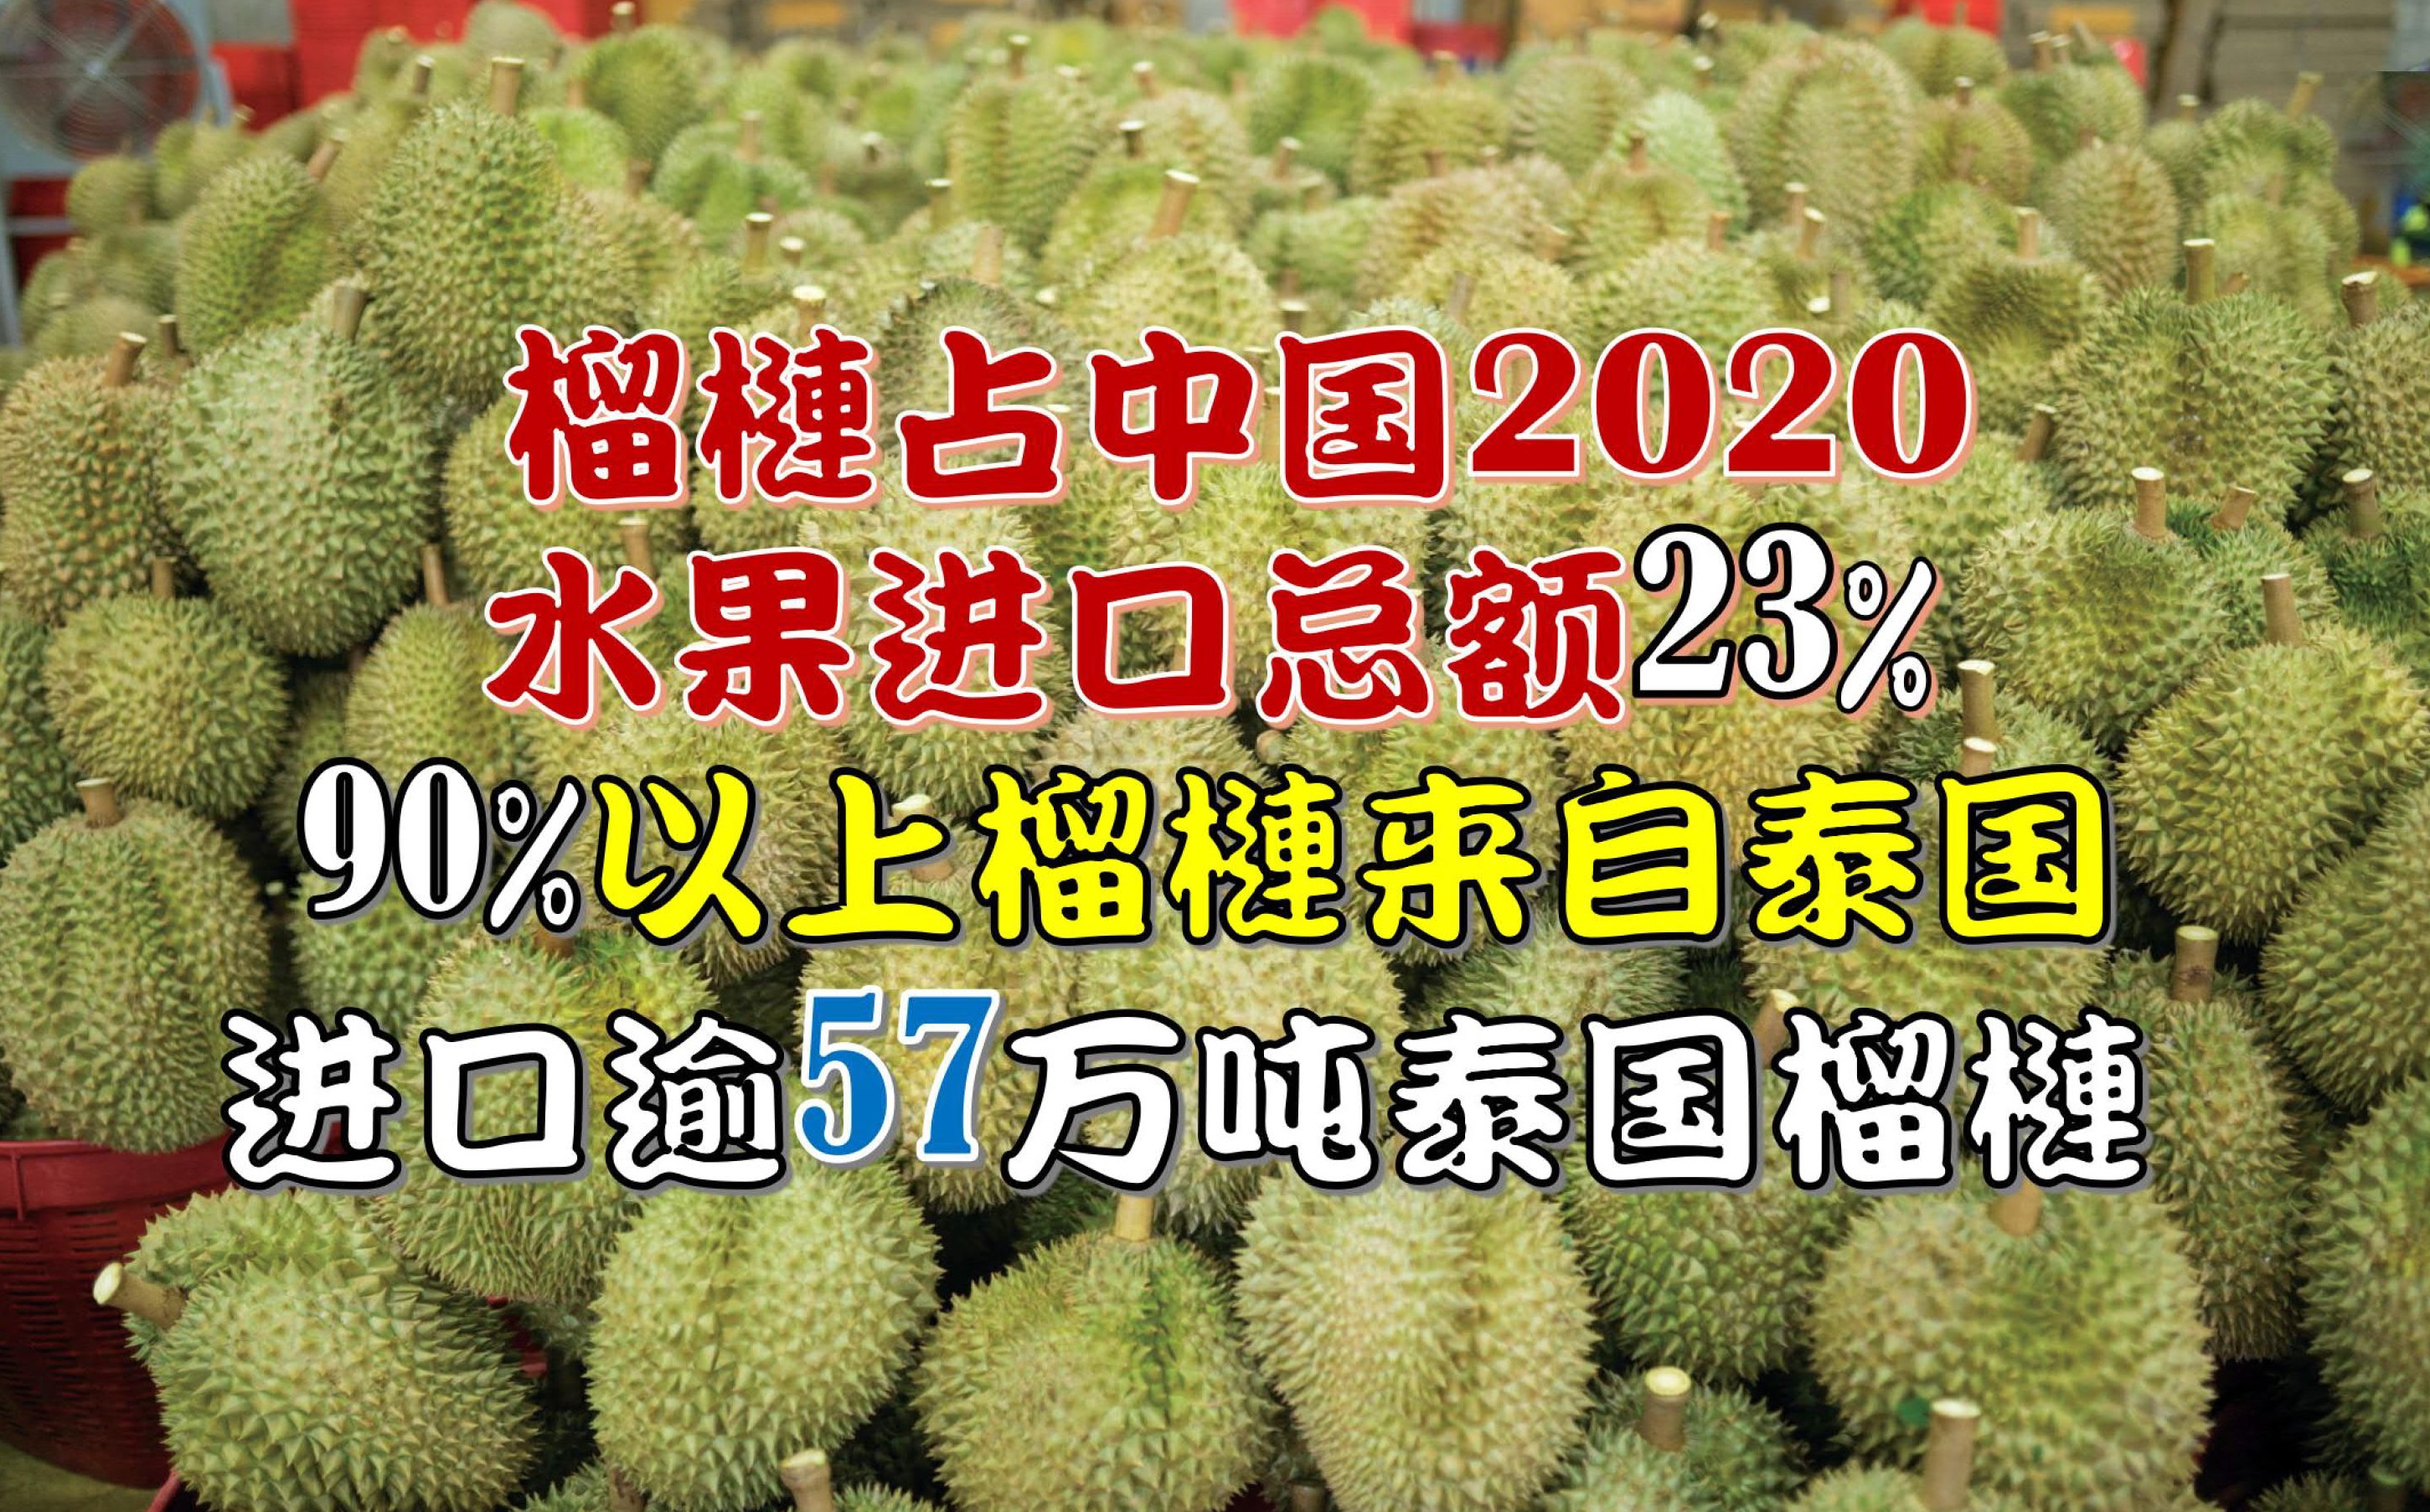 中国2020年 进口逾57万吨泰国榴梿 - 农牧世界